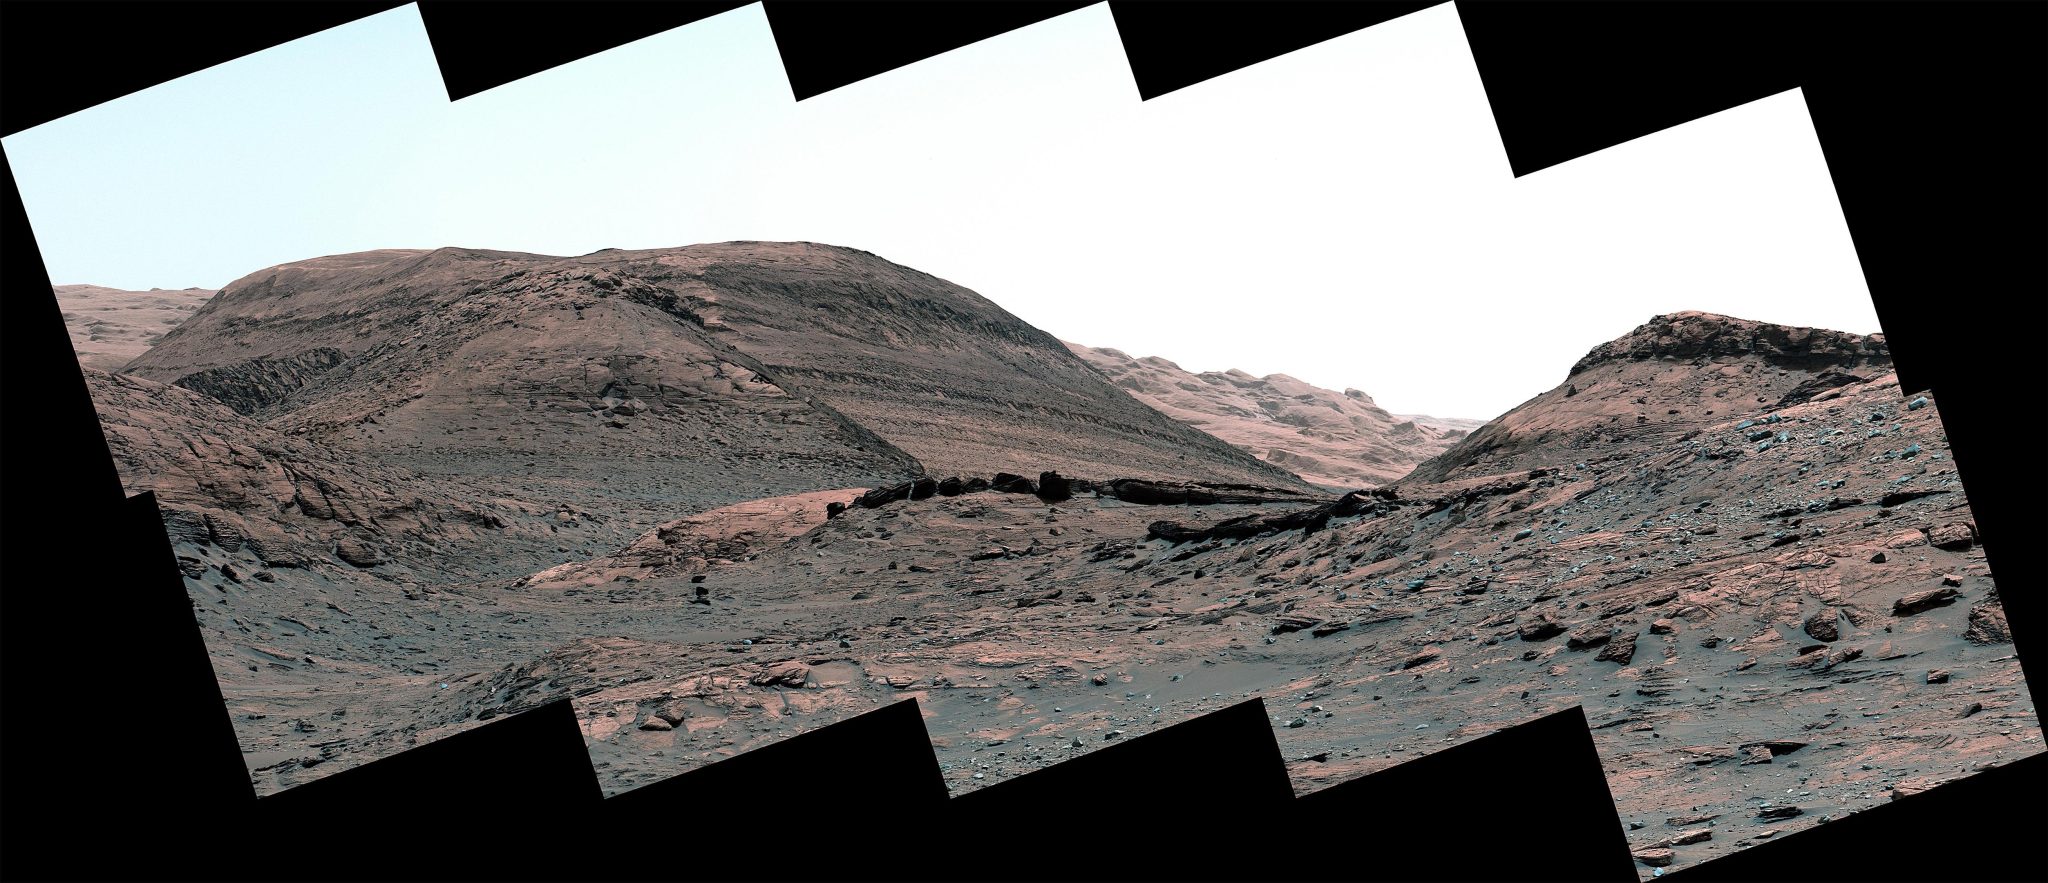 Curiosity Mars Rover Región de cojinete de sulfato